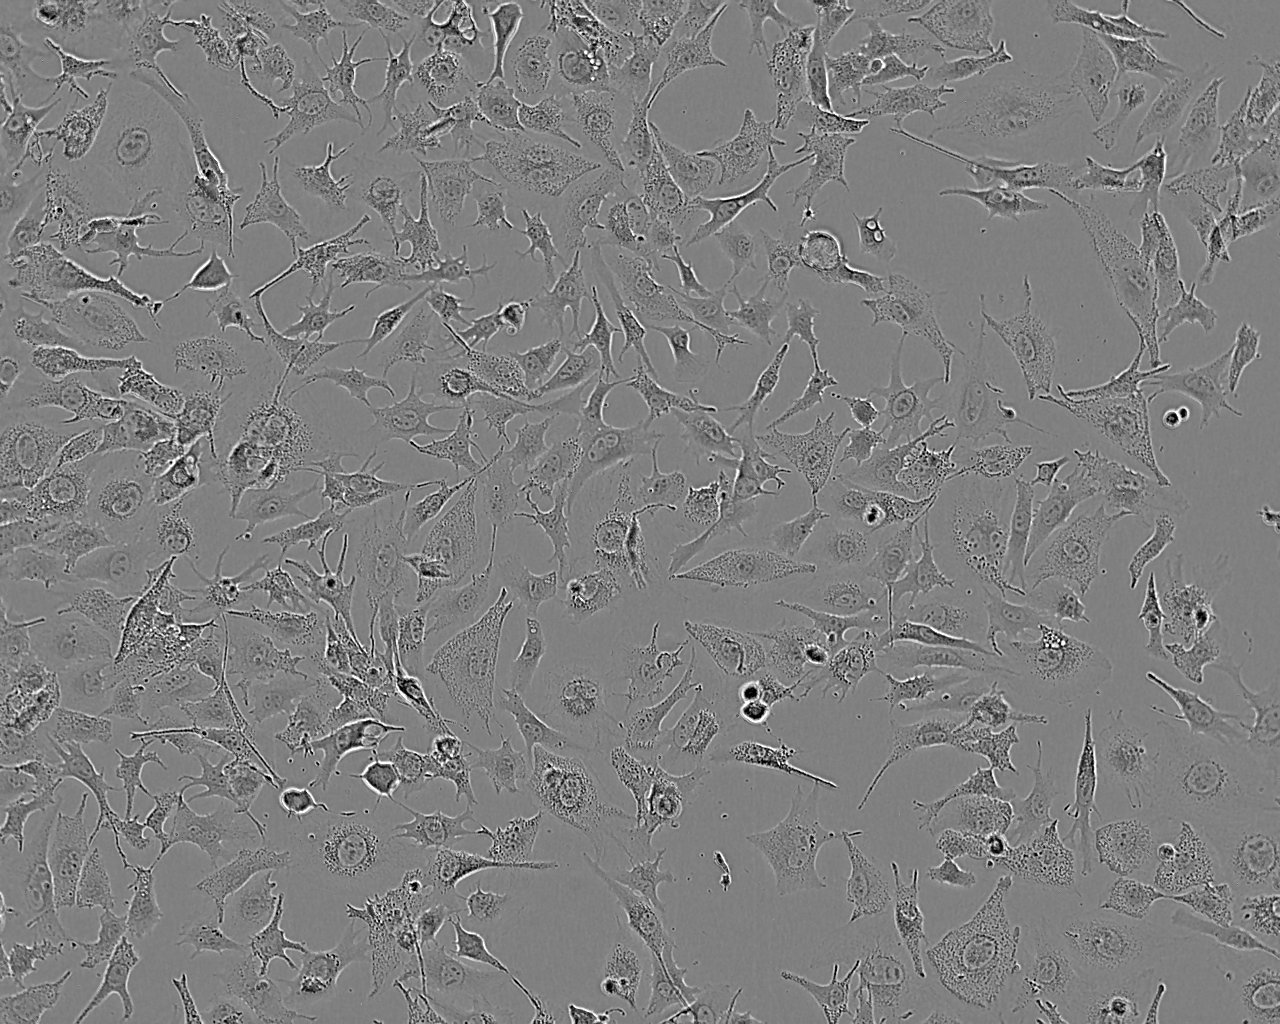 SNU-216 Cells|人胃癌可传代细胞系